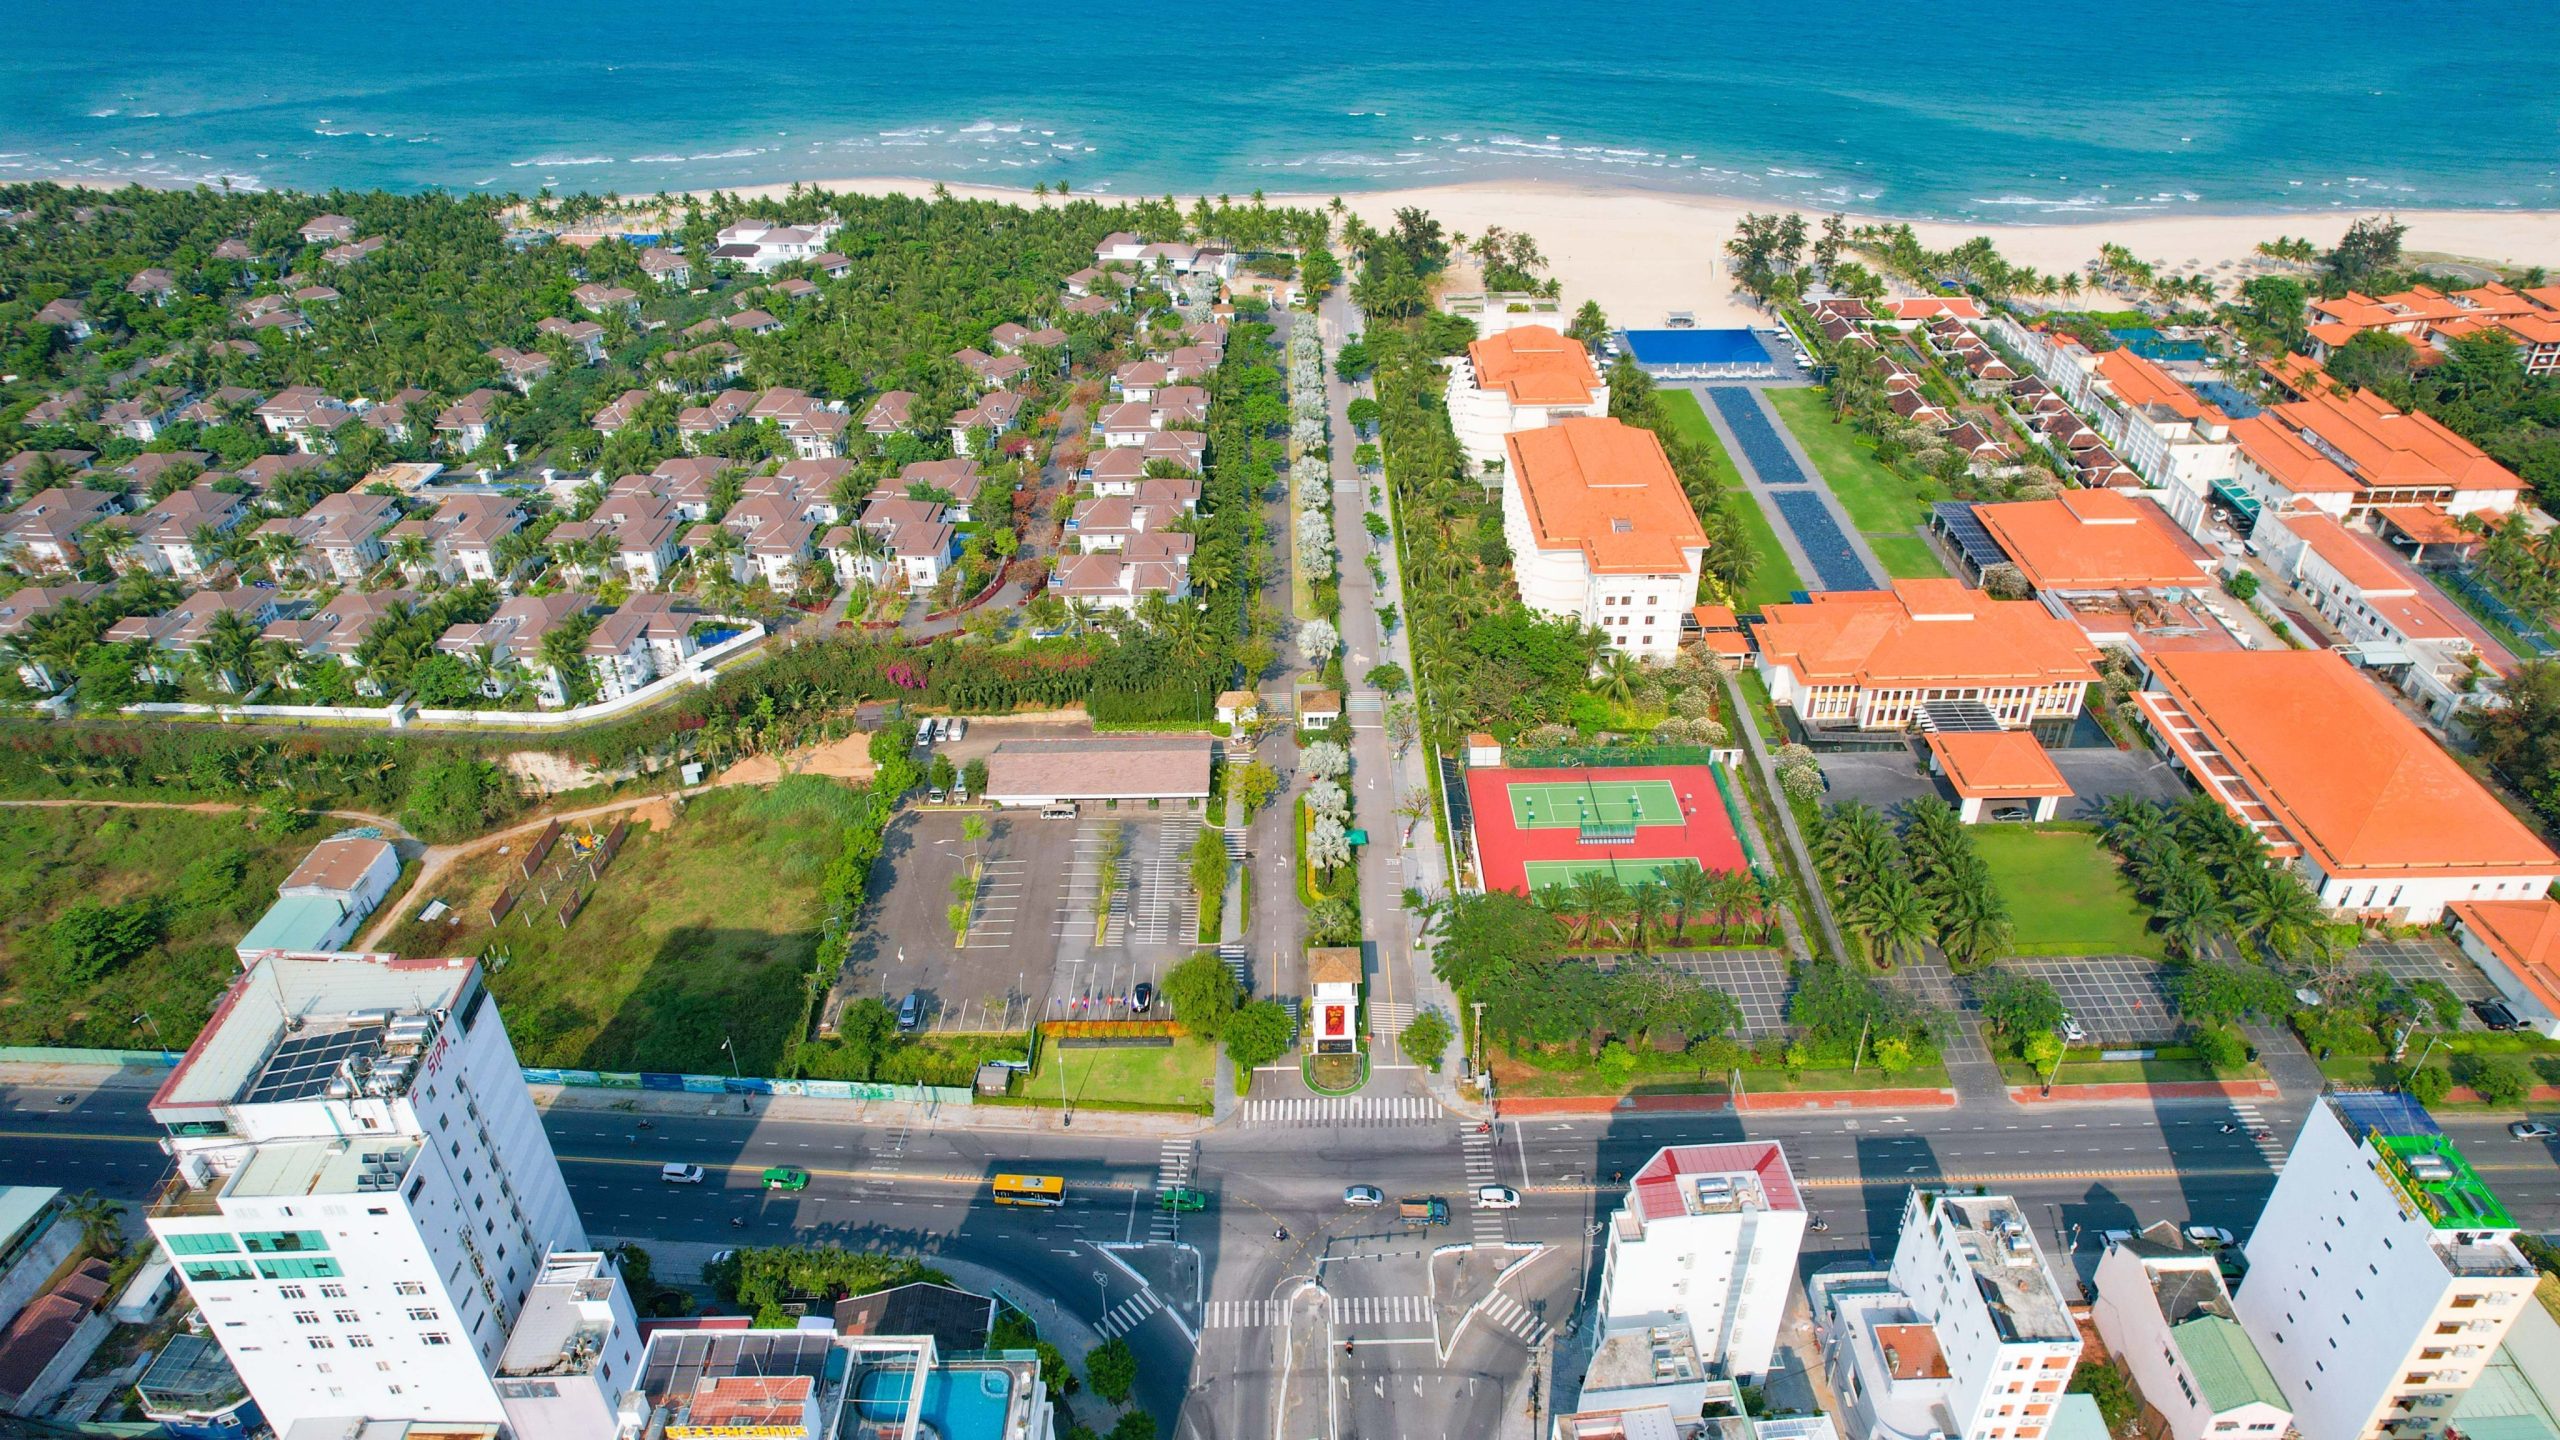 The Sang Residence: Không gian sống lành mạnh từ cảm hứng biển xanh - Viet Nam Smart City